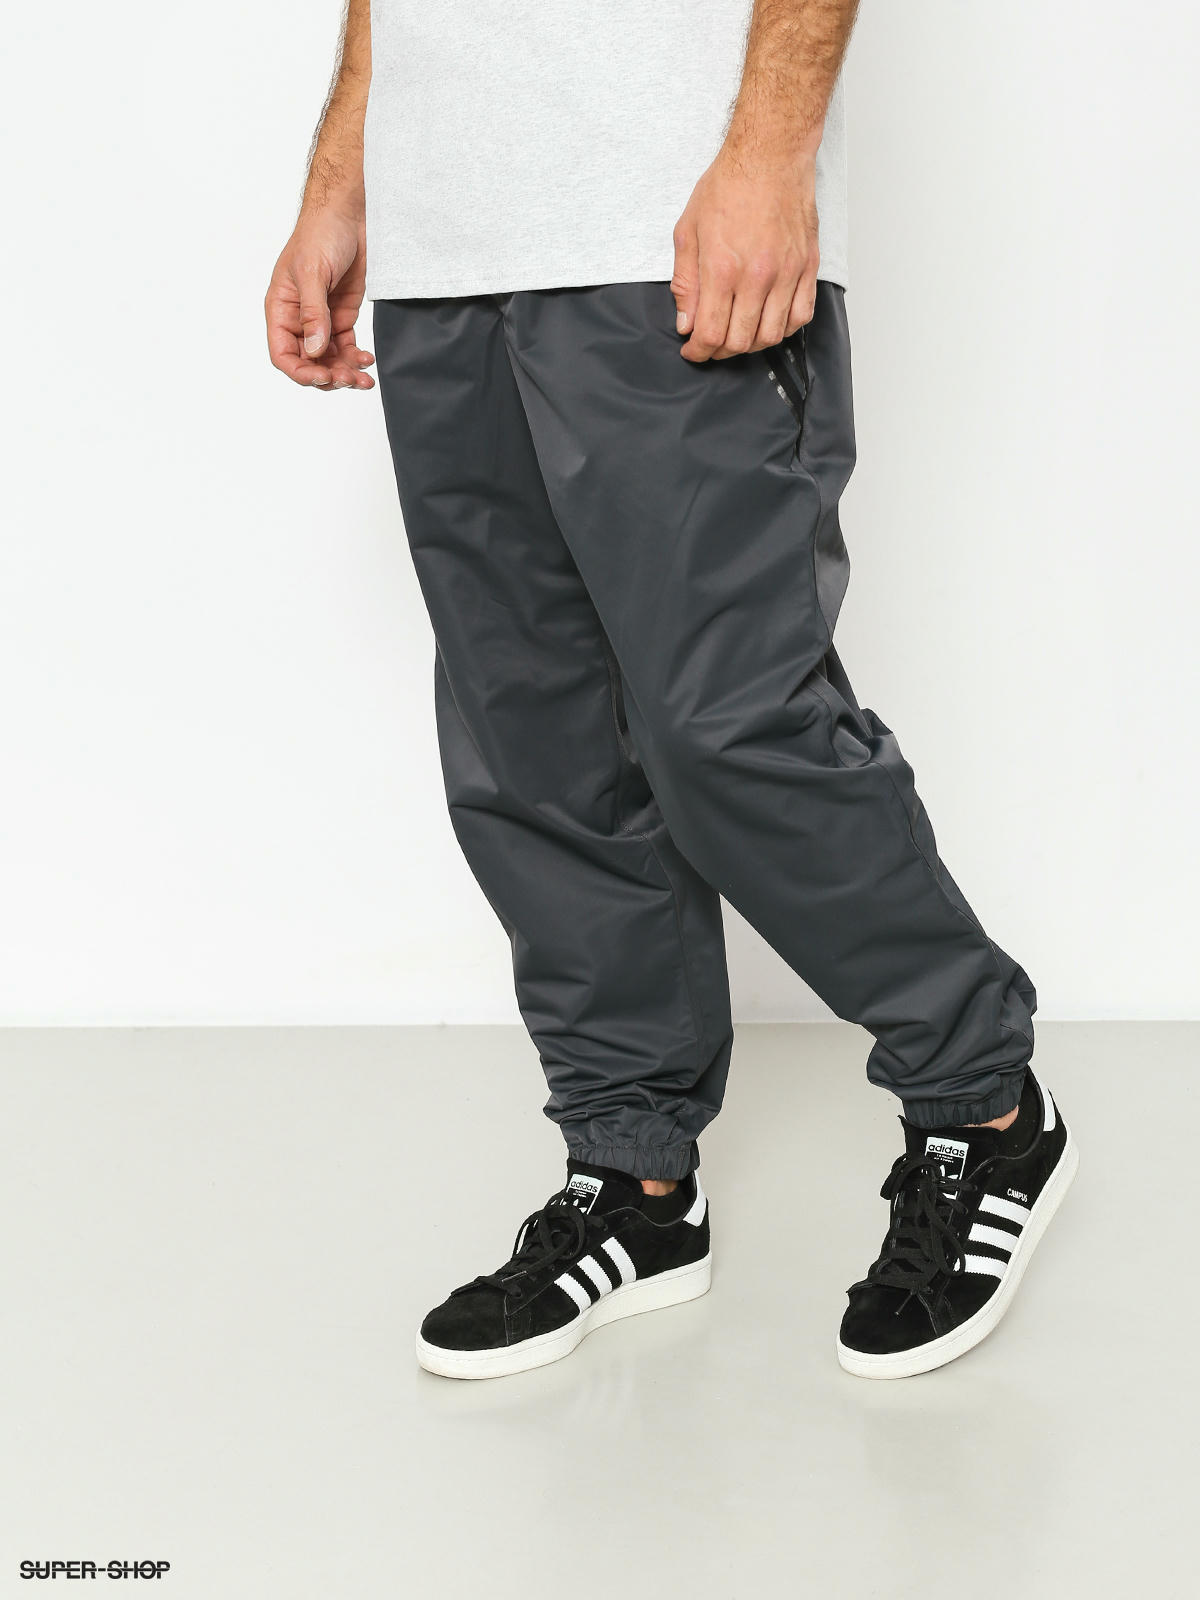 Carbon Mens 34 30 Skinny Jeans Pants Black Soft Lightweight j173 | eBay